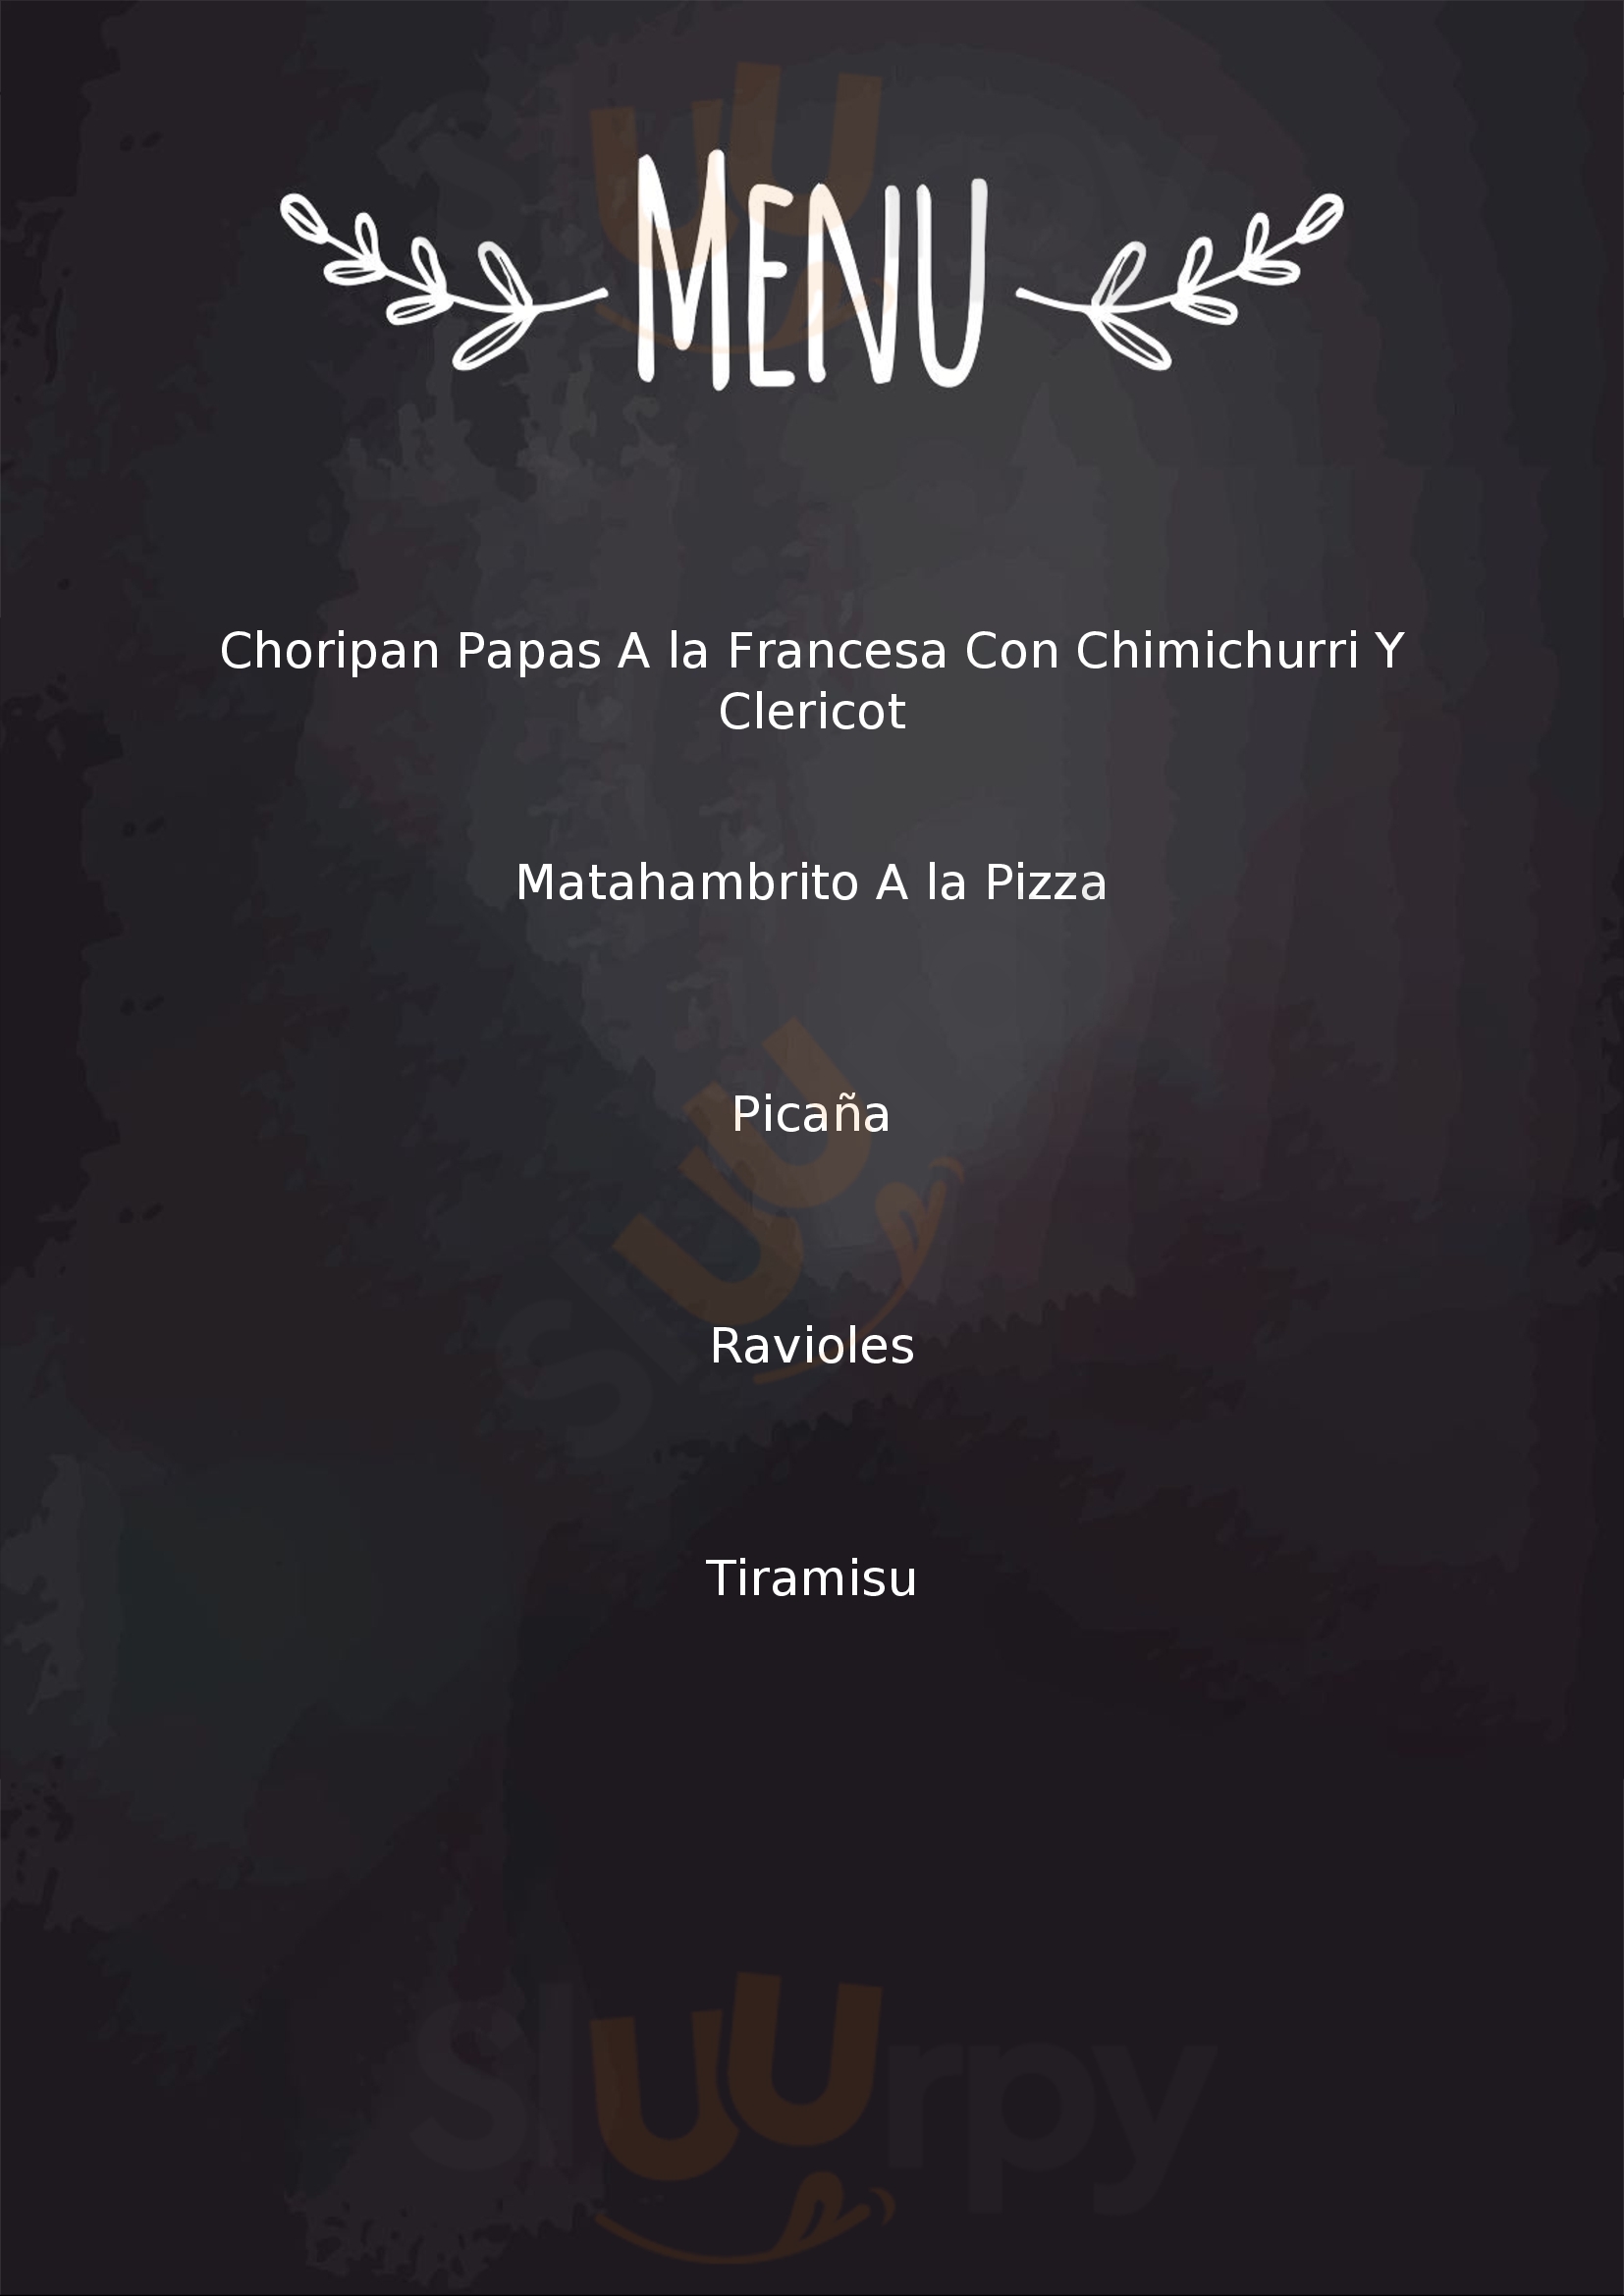 Sean Eternos Restaurante Ciudad de México Menu - 1